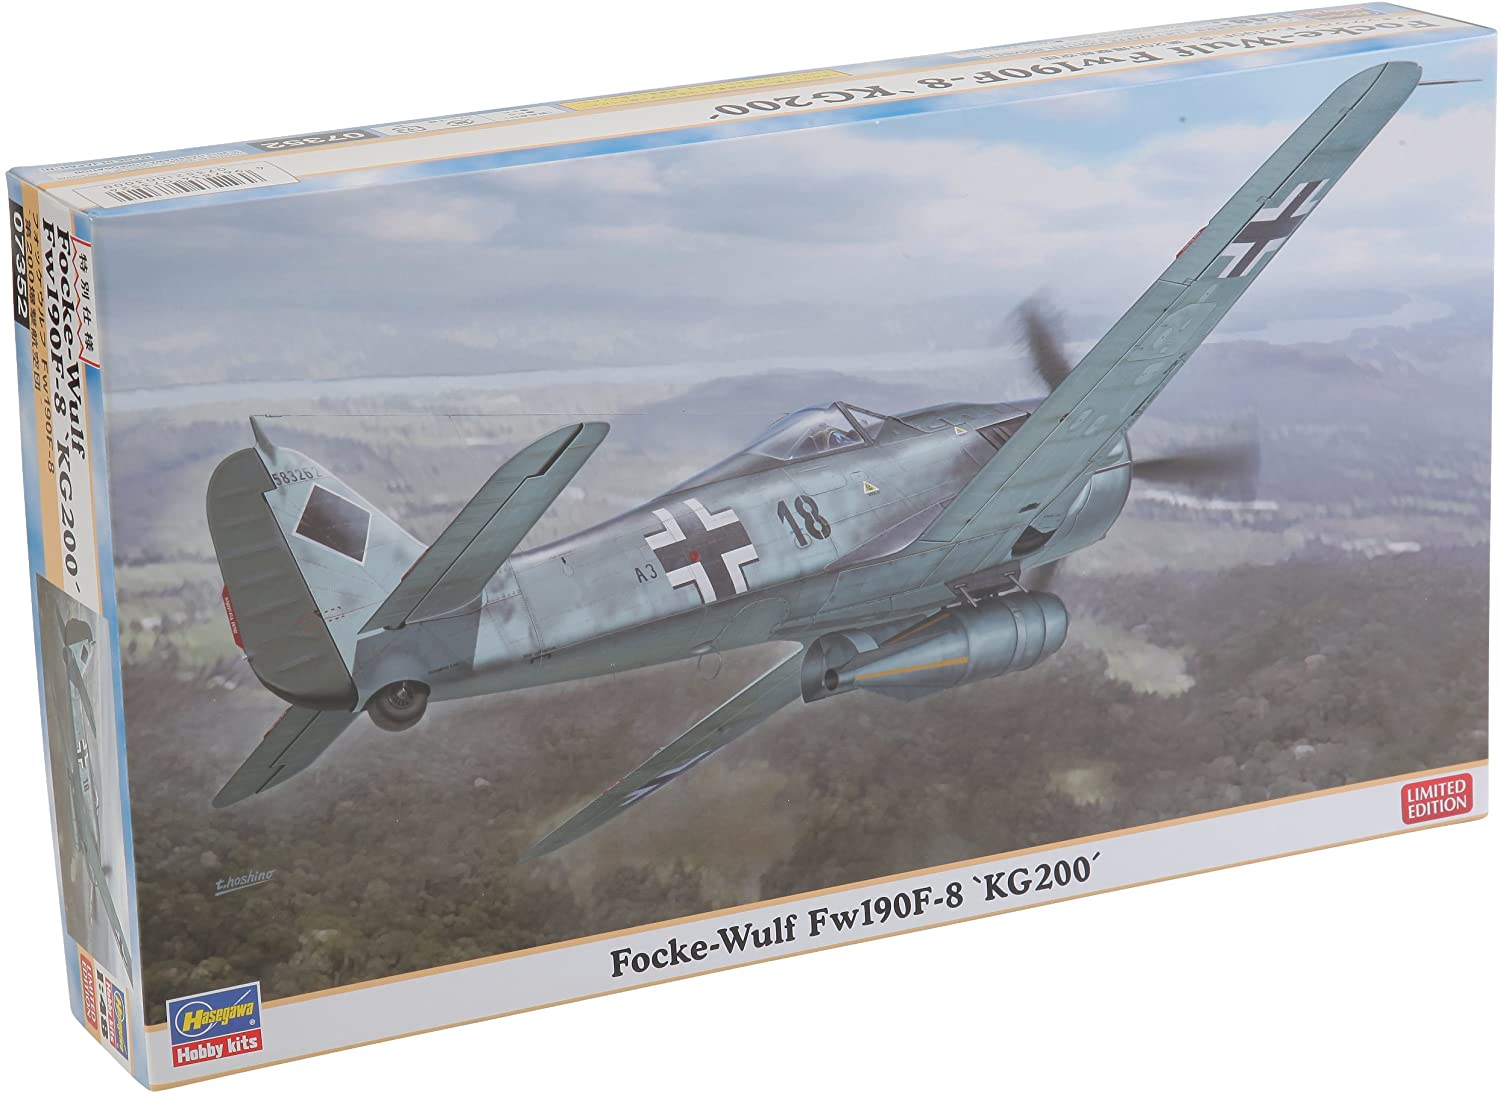 ハセガワ 1/48 ドイツ空軍 フォッケウルフ Fw190F-8 第200爆撃航空団 プラモデル 07352